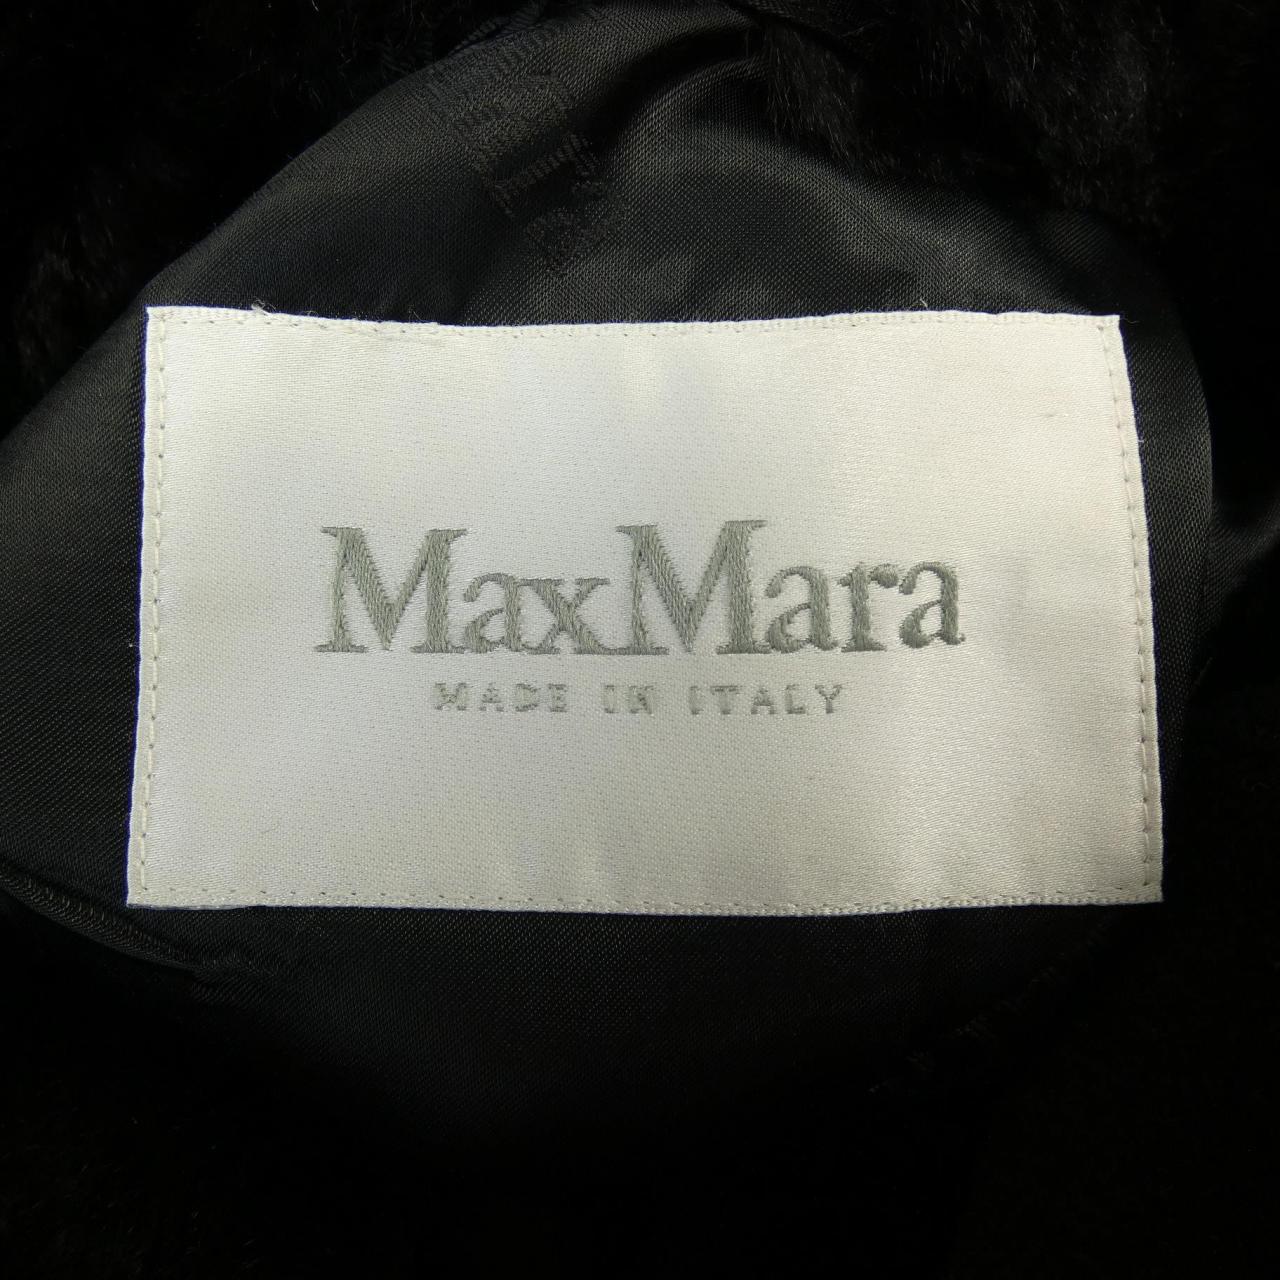 Max Mara) 外套